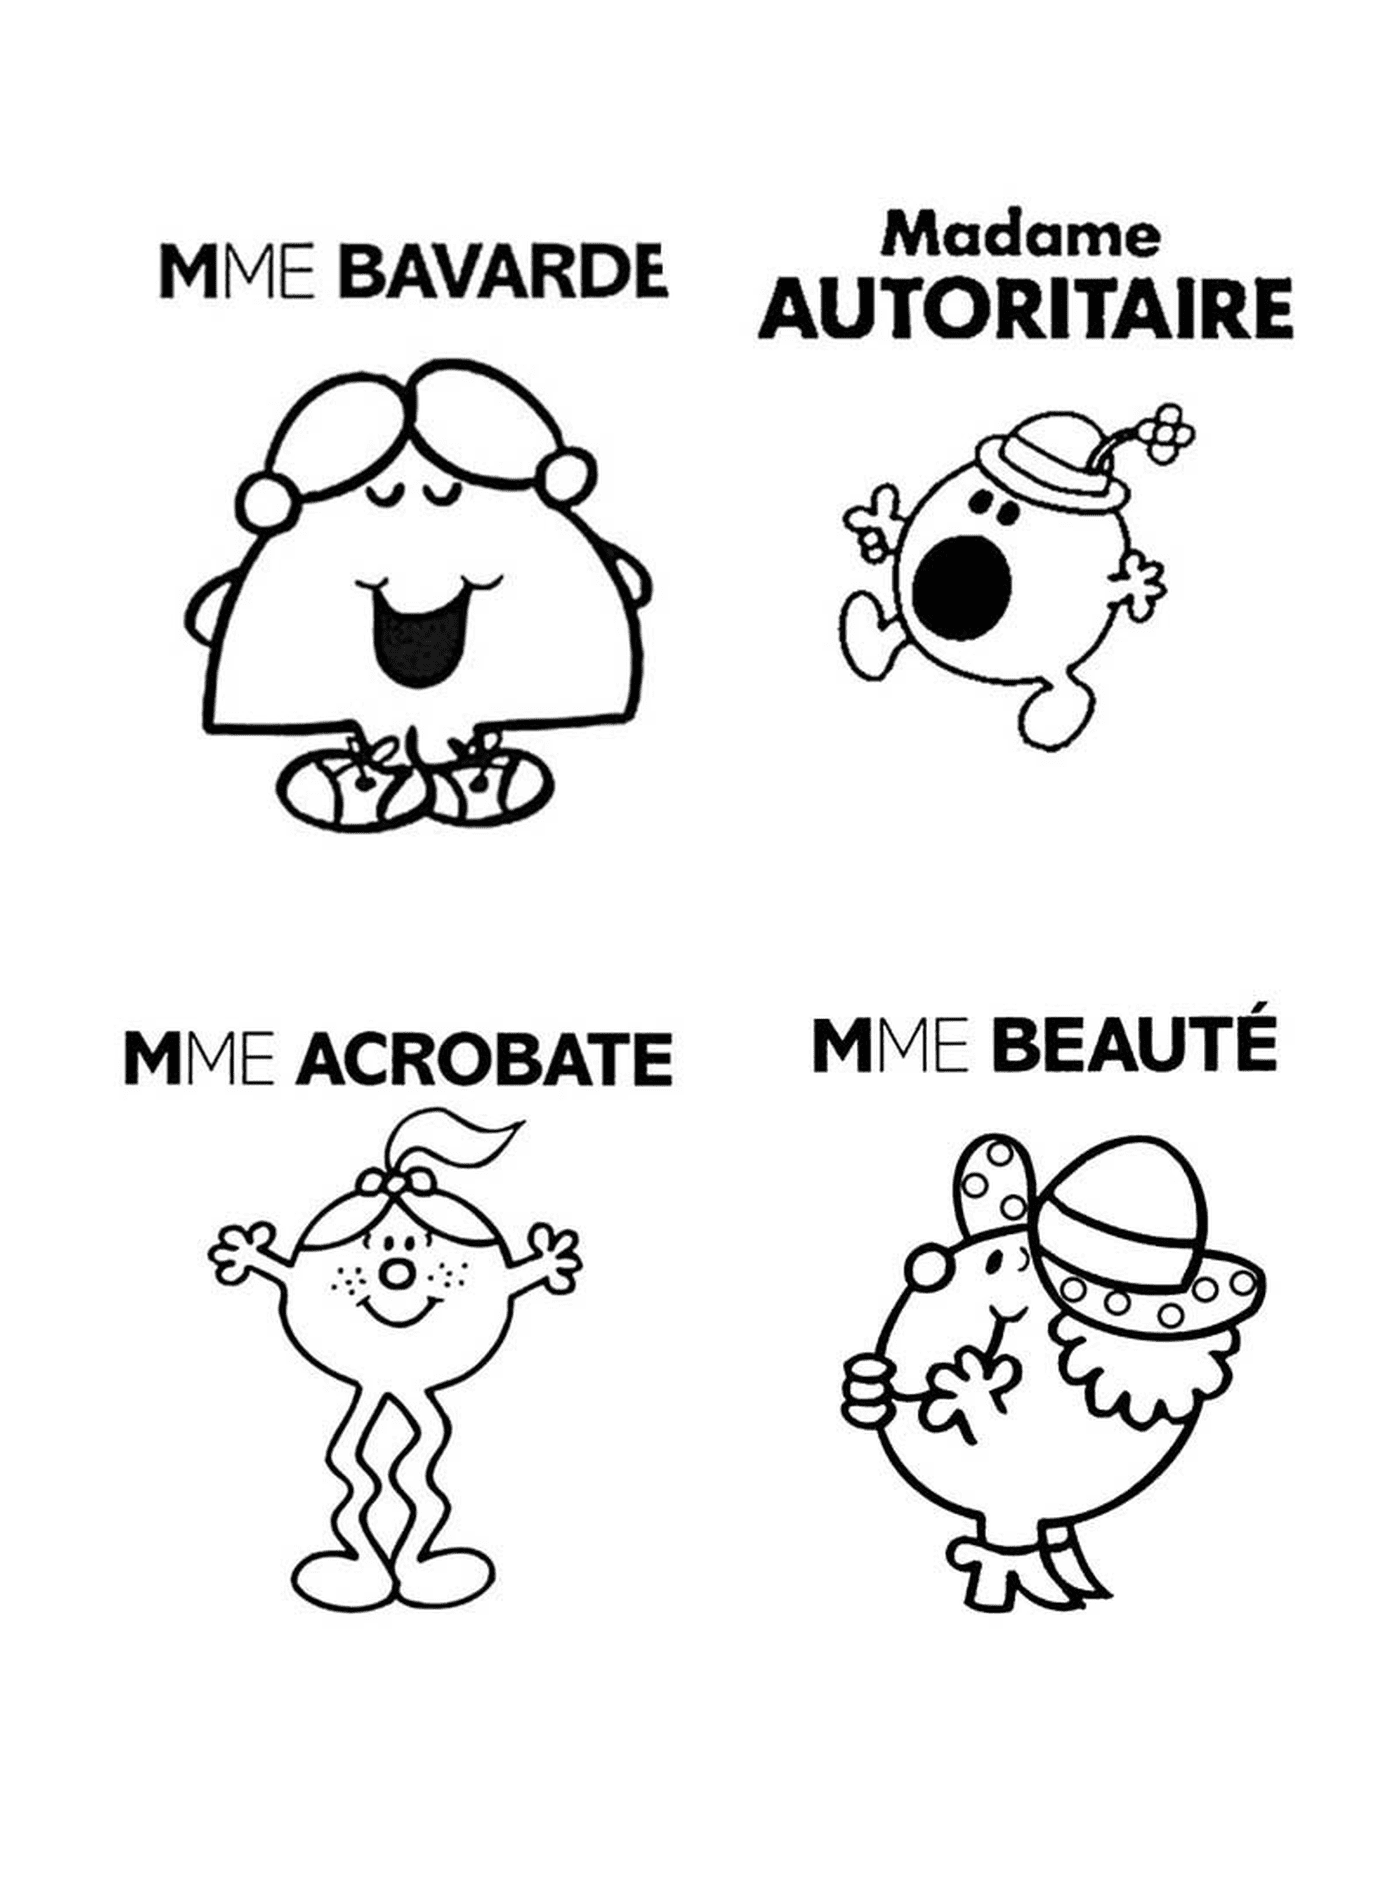   Monsieur Madame Bavarde, Autoritaire, Acrobate, Beauté 